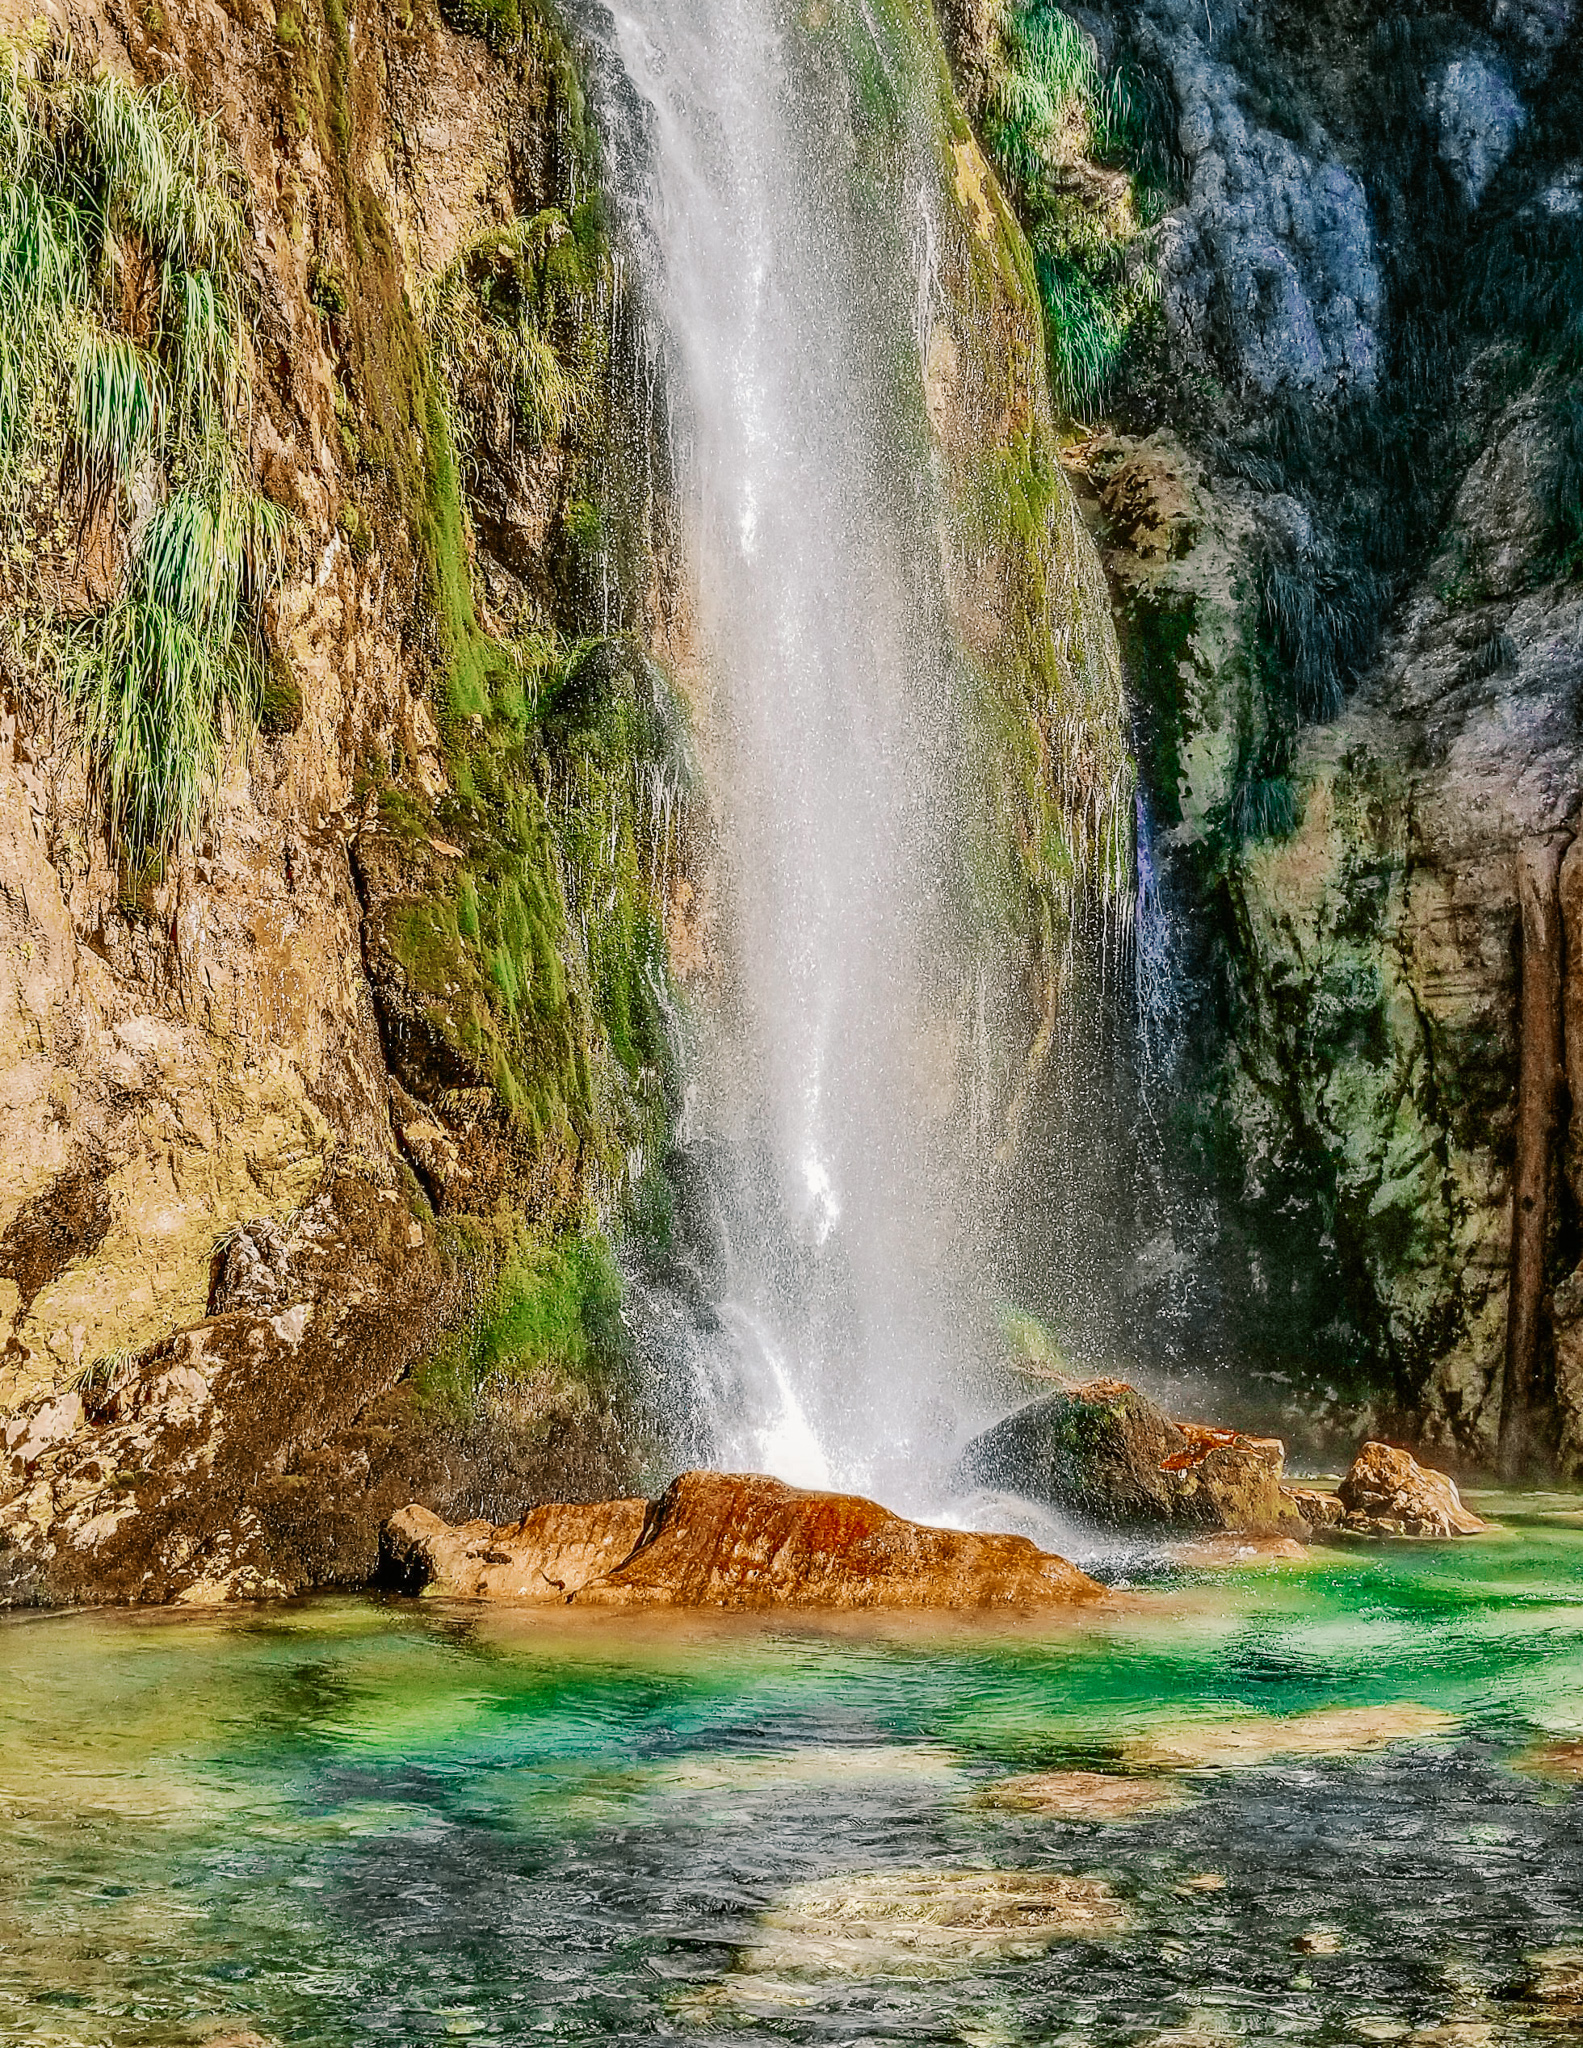 grunas waterfall in Theth in Albania